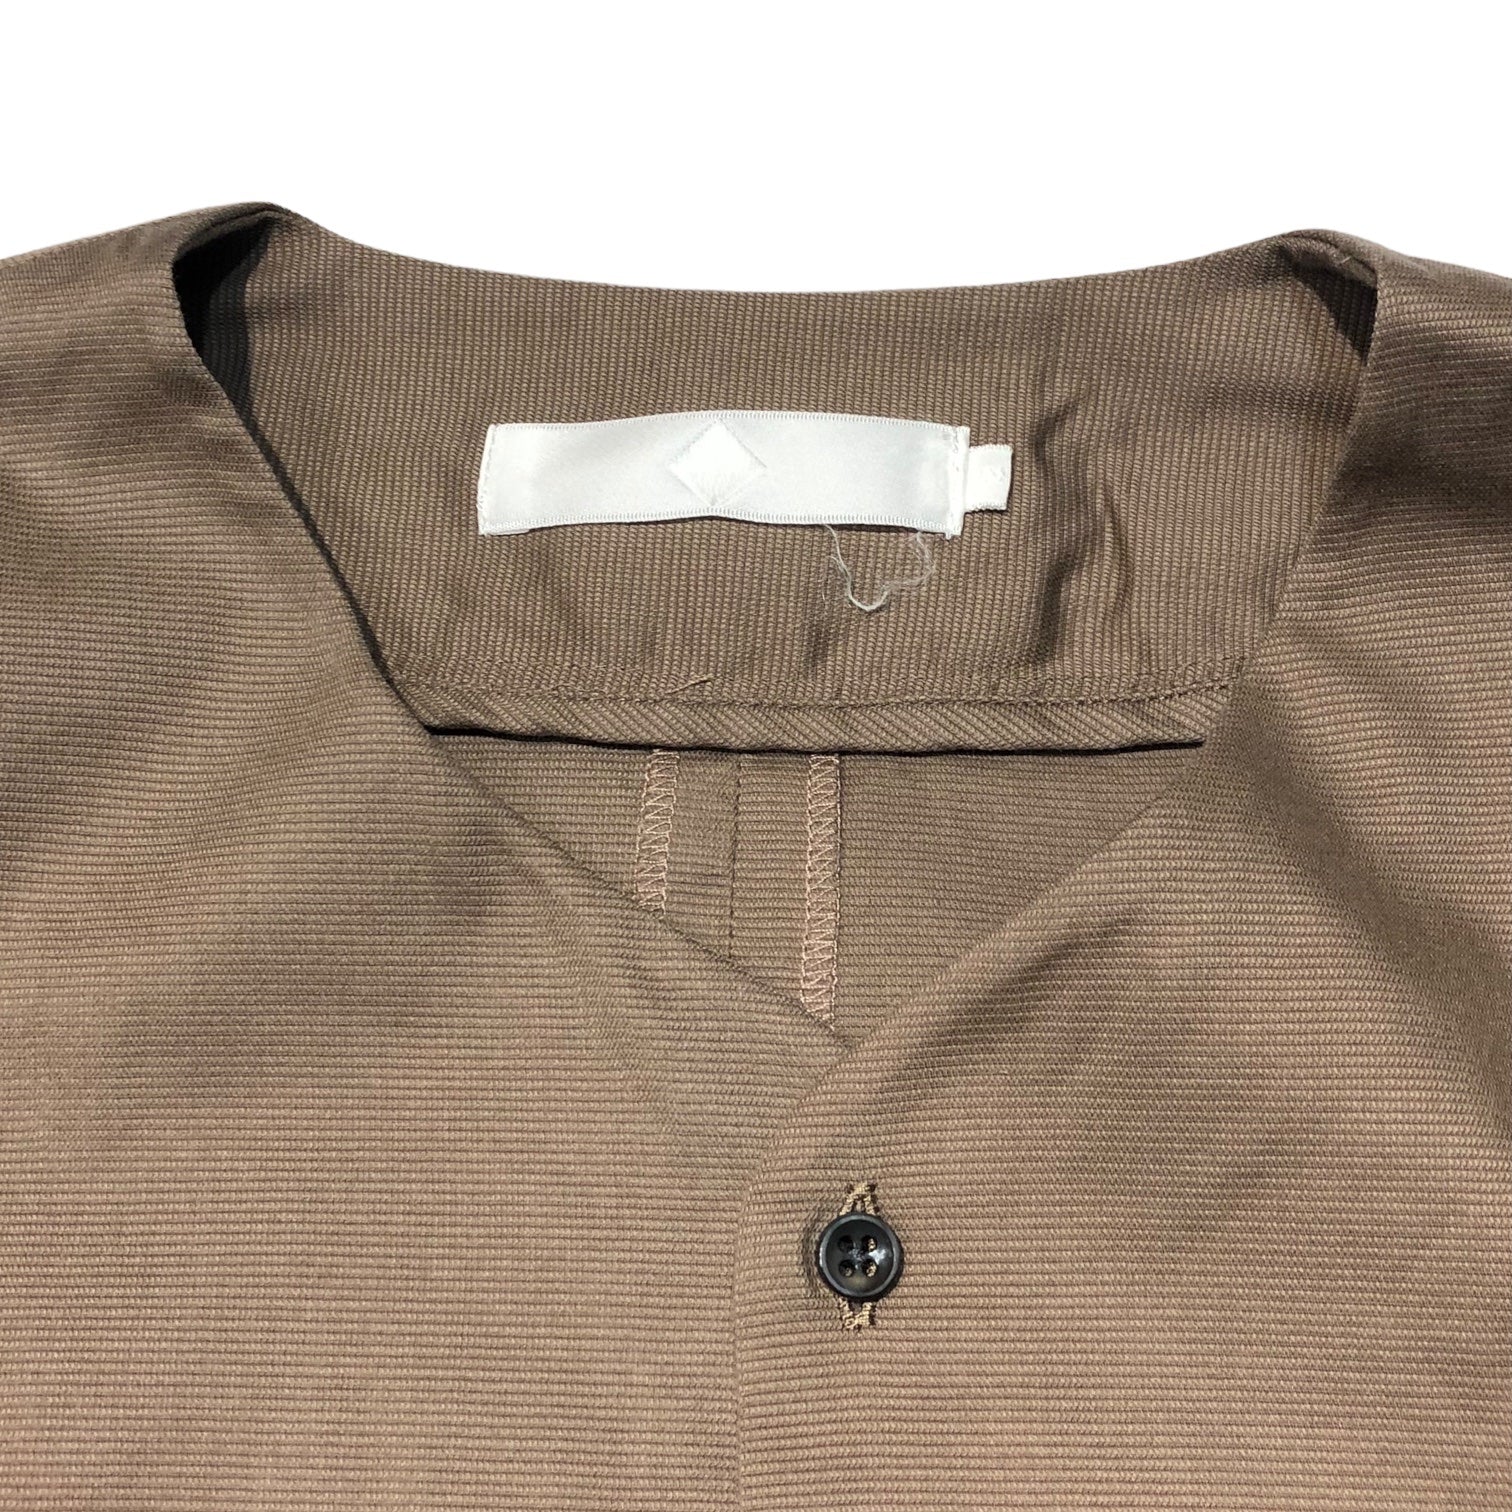 ETHOSENS(エトセンス) S/S pullover shirt 半袖 プルオーバー シャツ 2(M程度) ベージュ